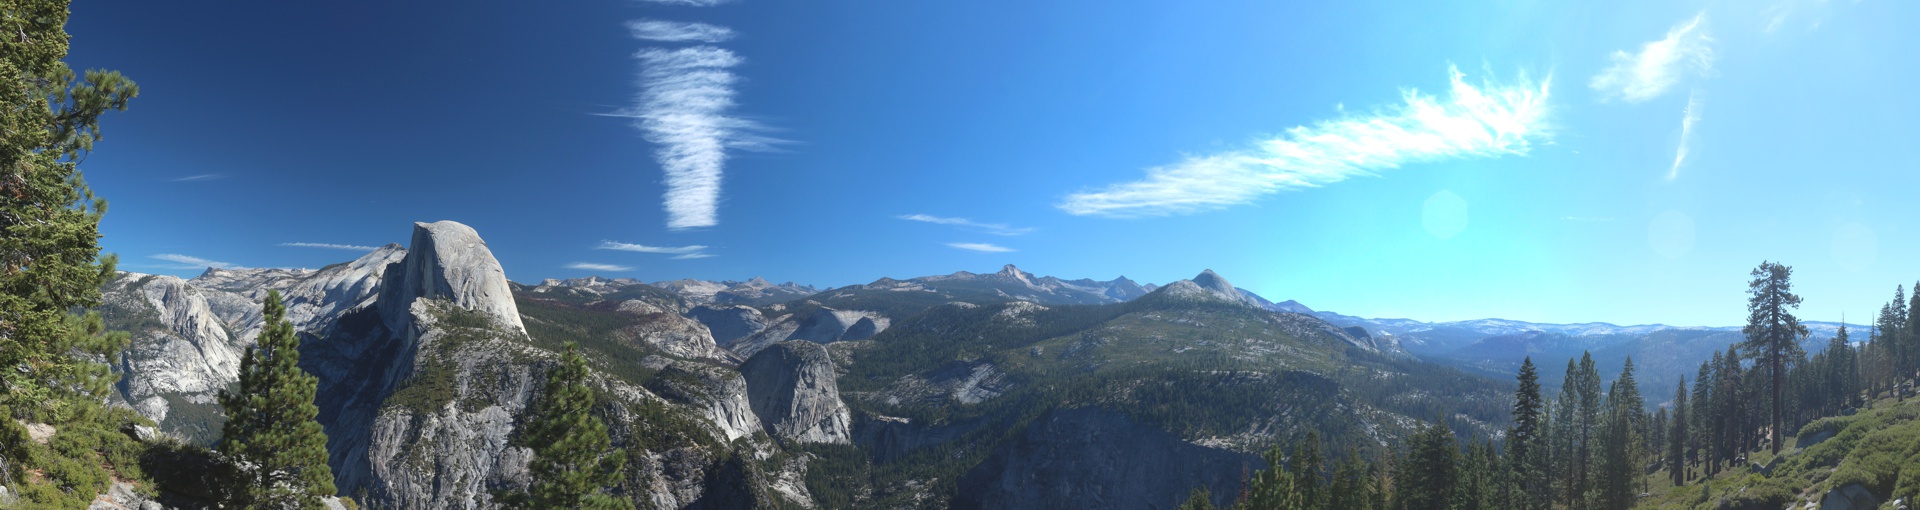 Der Yosemite Nationalpark in den USA